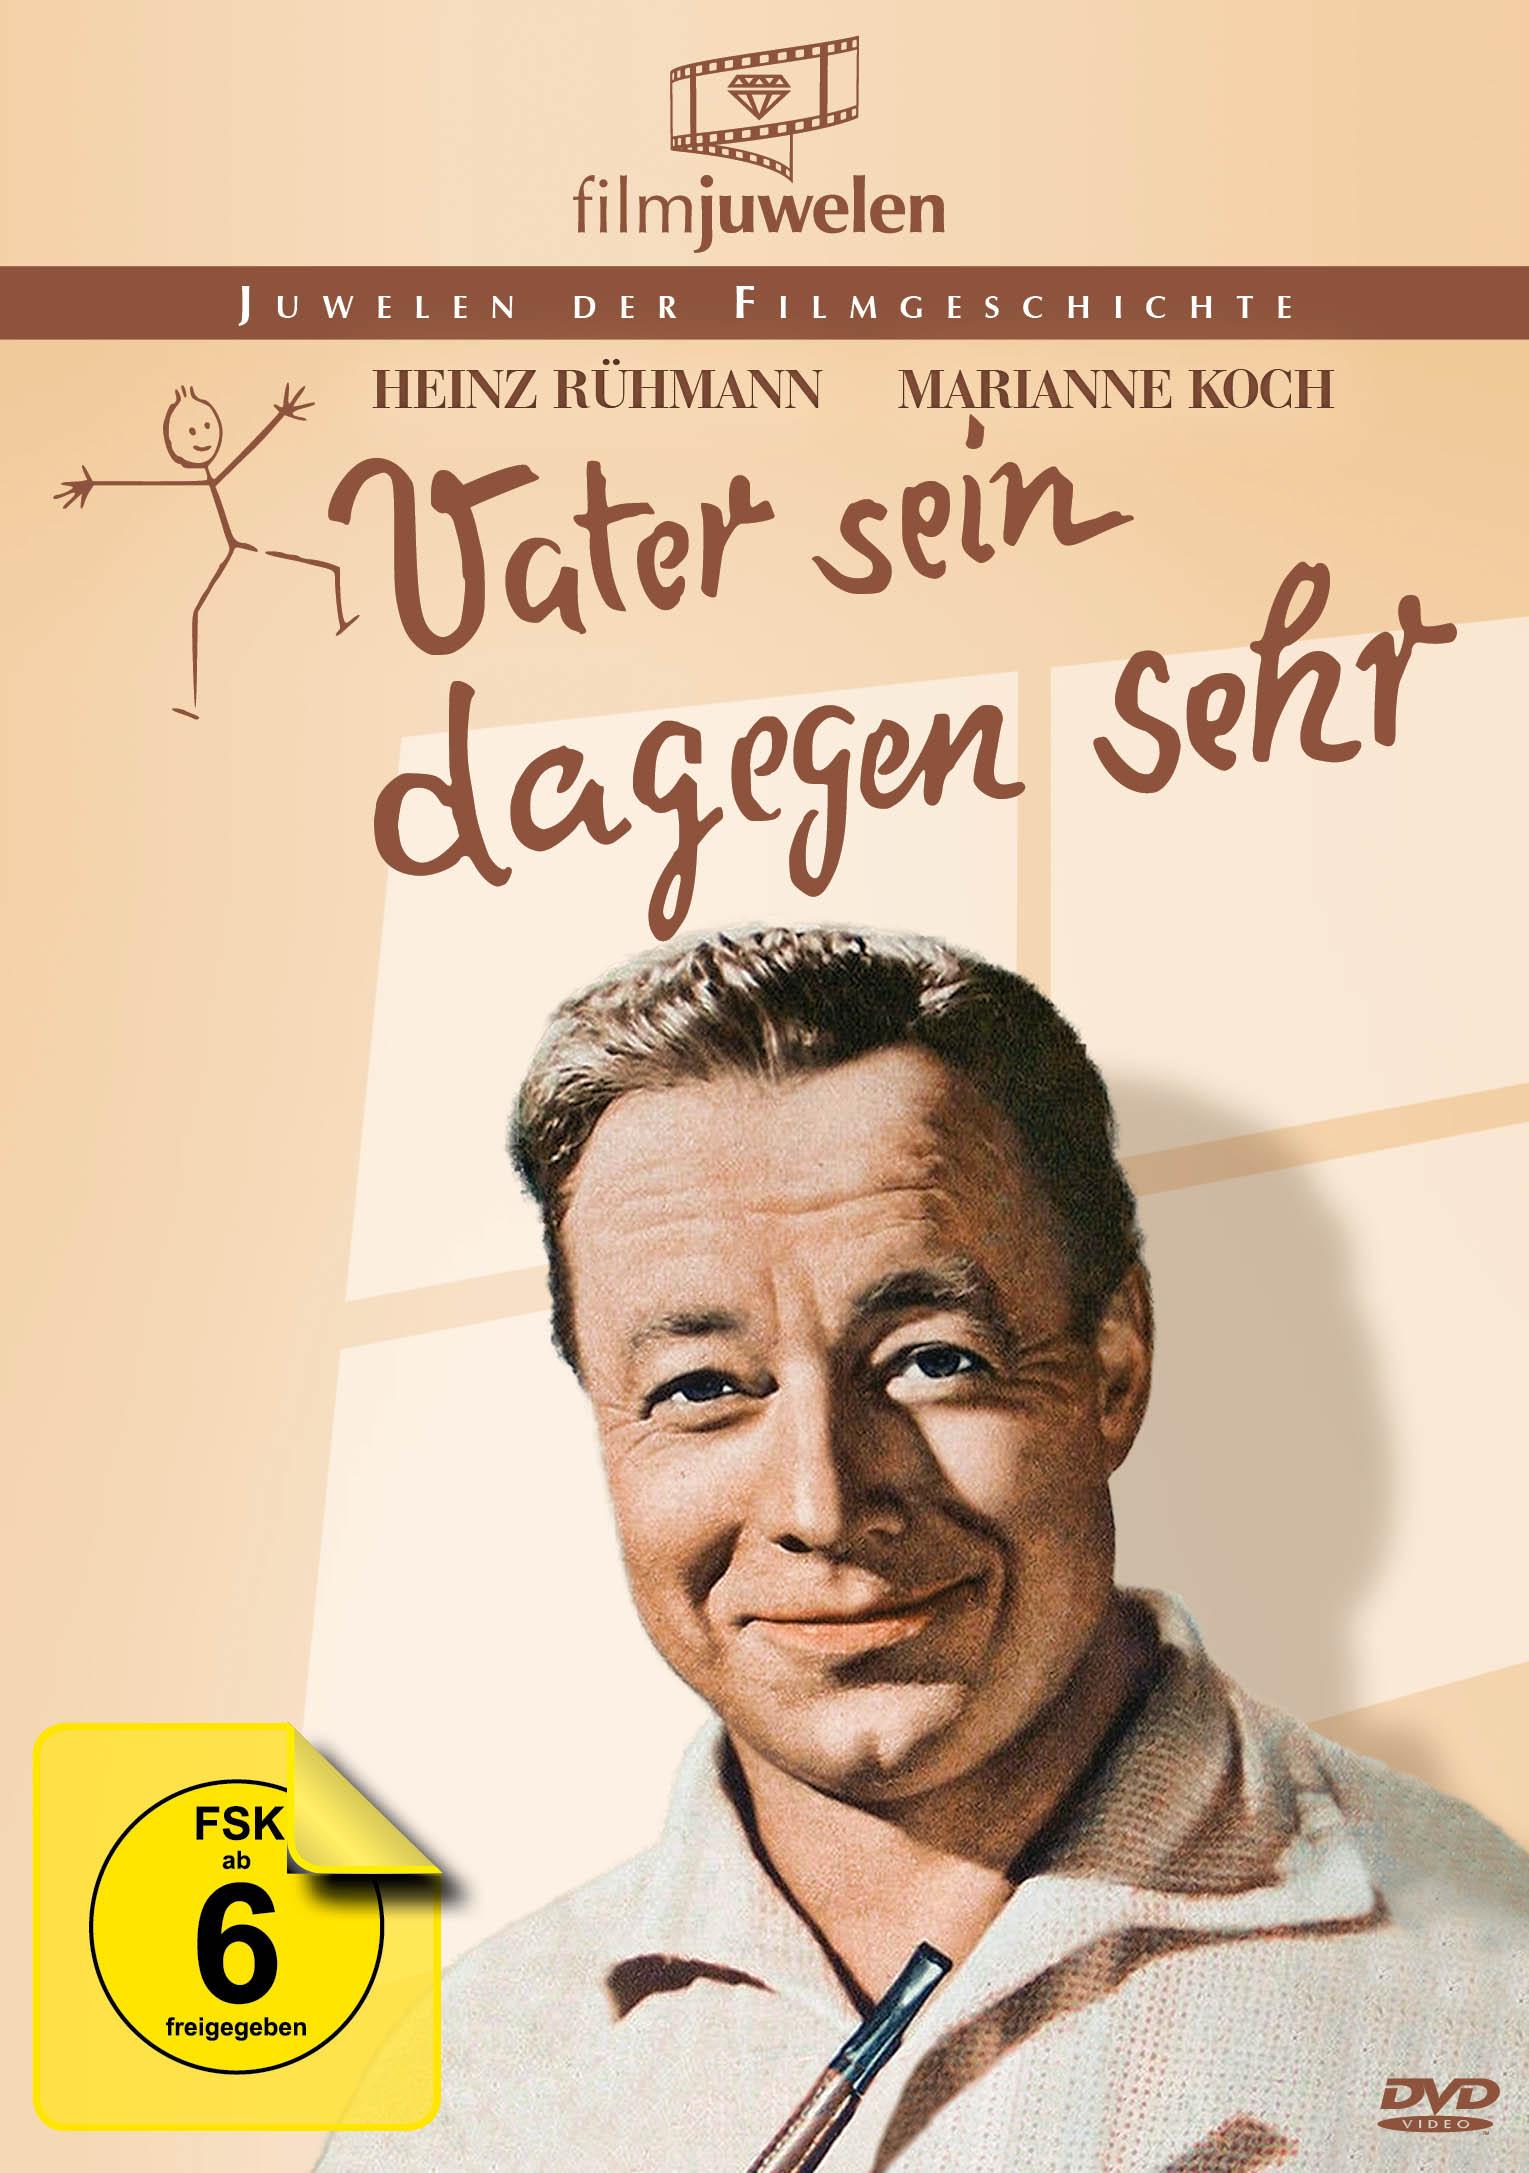 Heinz Rühmann sein Vater DVD sehr Edition dagegen 